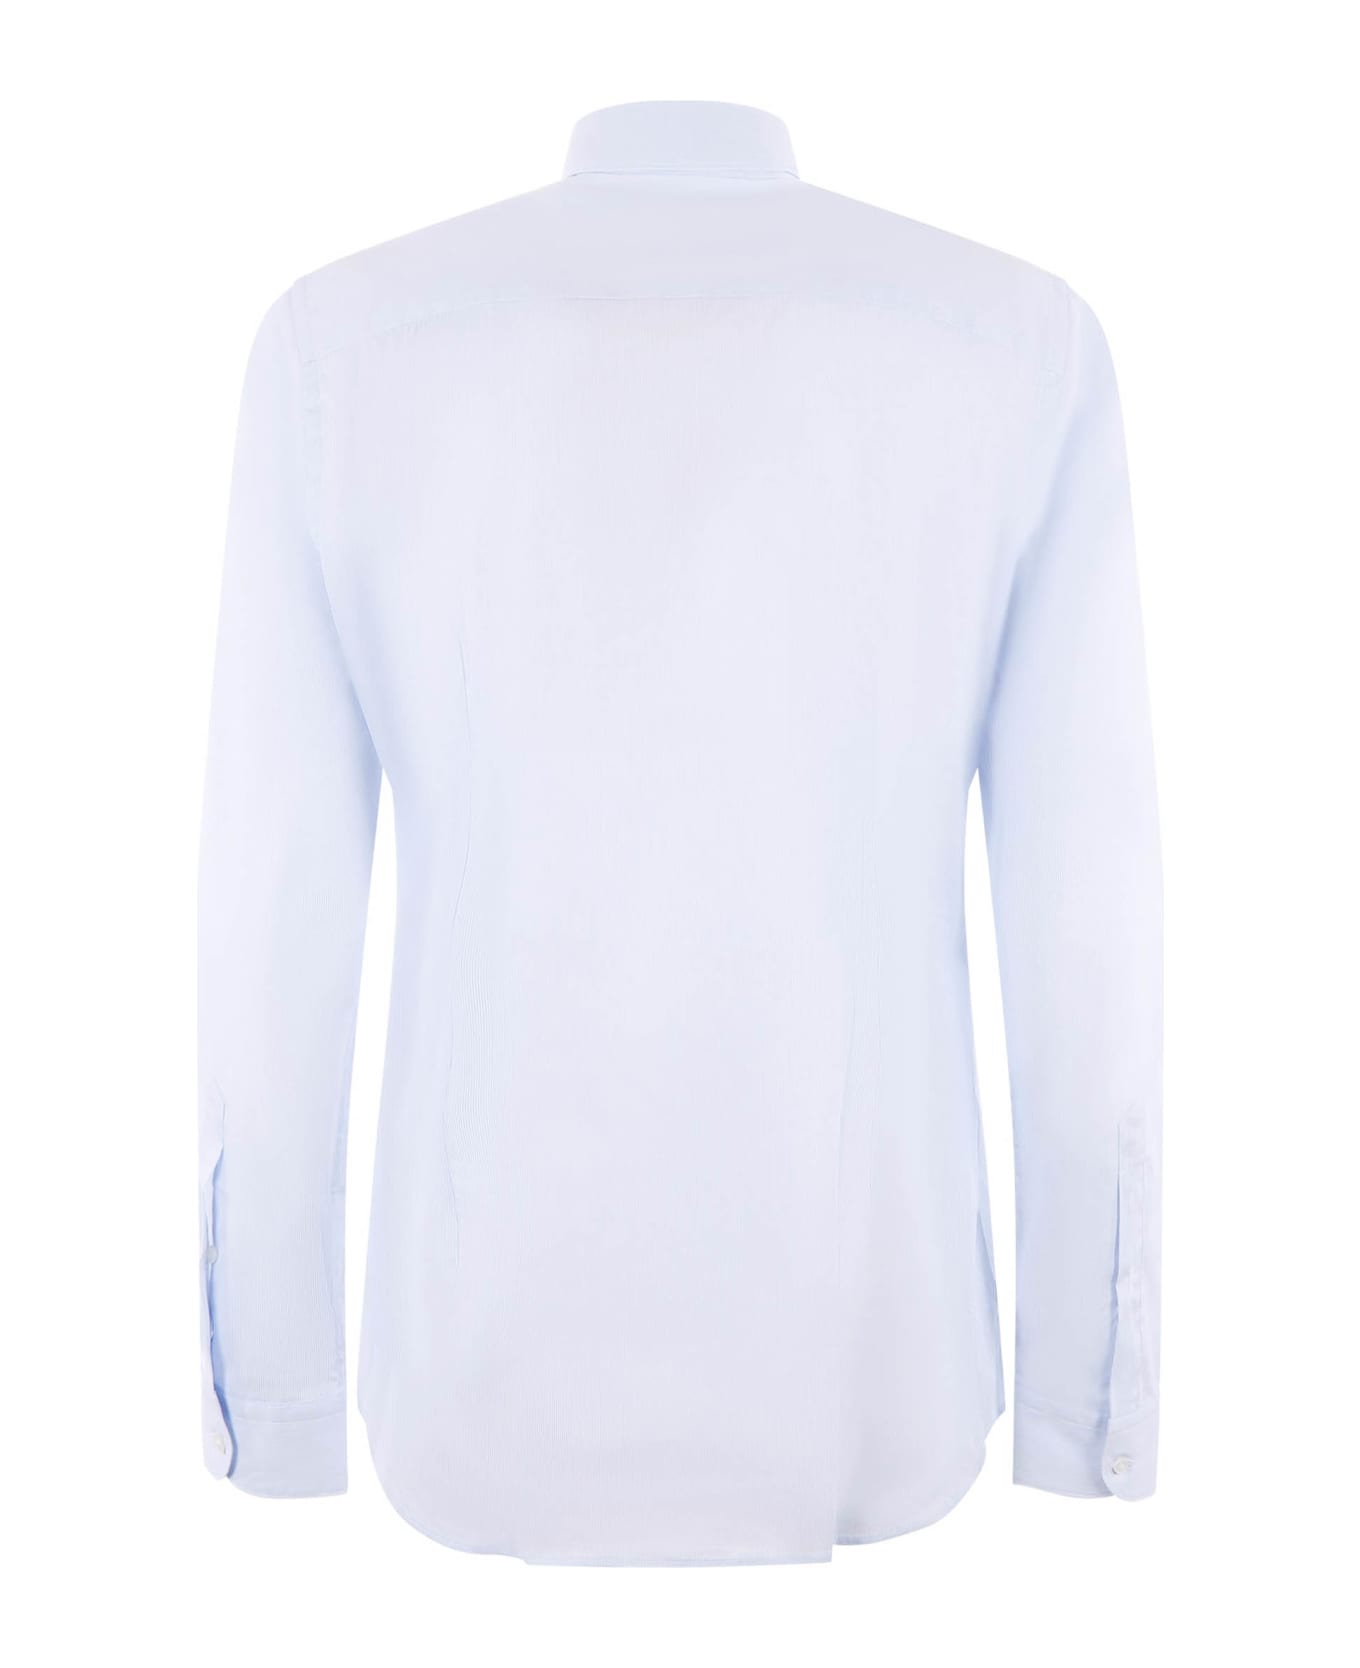 Fay Blue Cotton Striped Shirt - Rig celeste